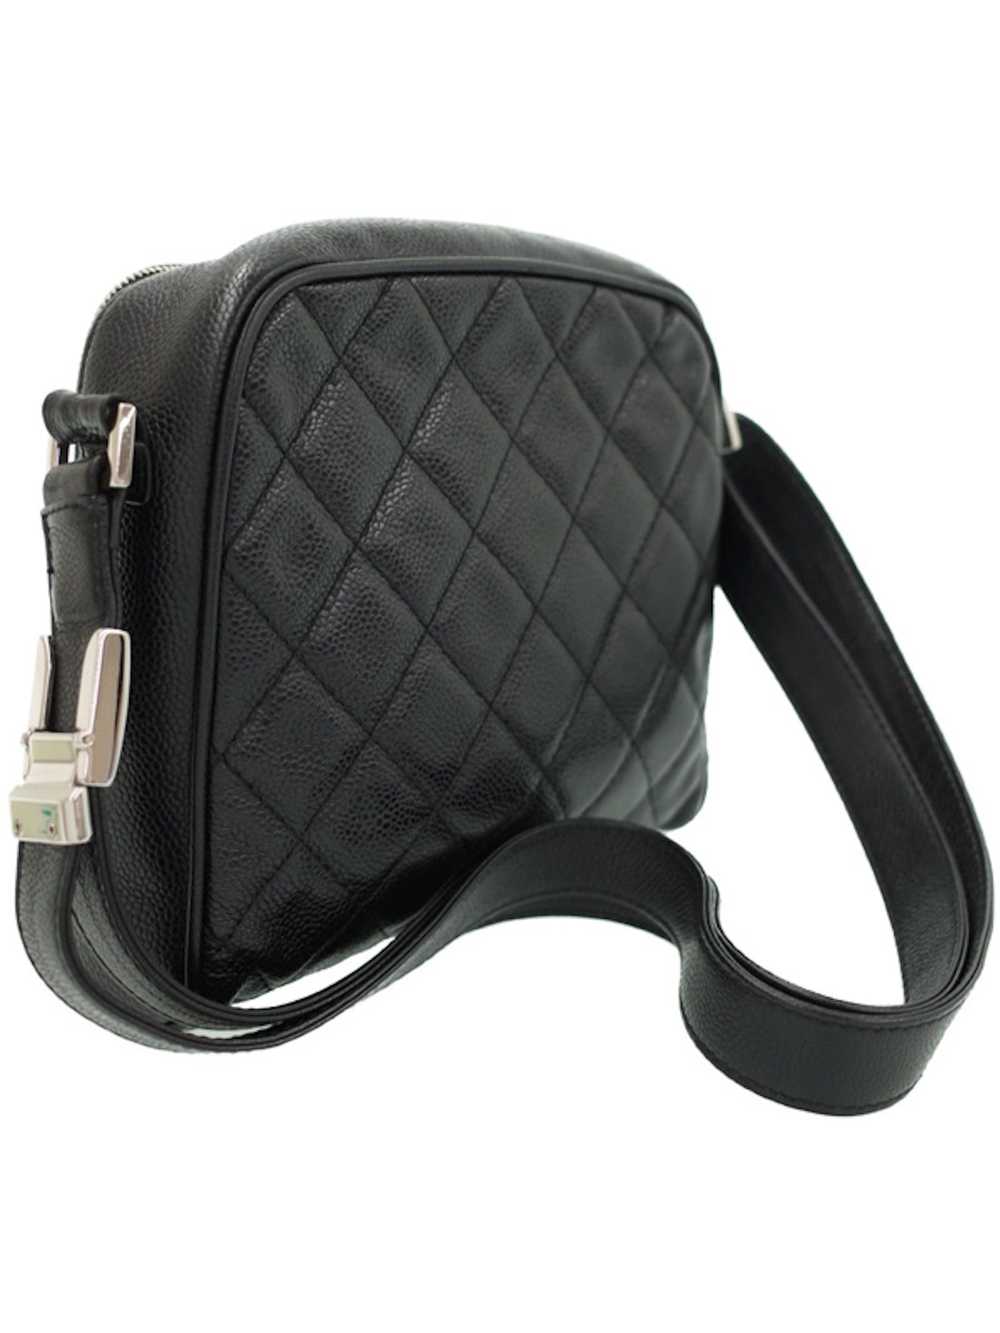 Chanel Chanel Matelasse Shoulder Bag Black - image 2